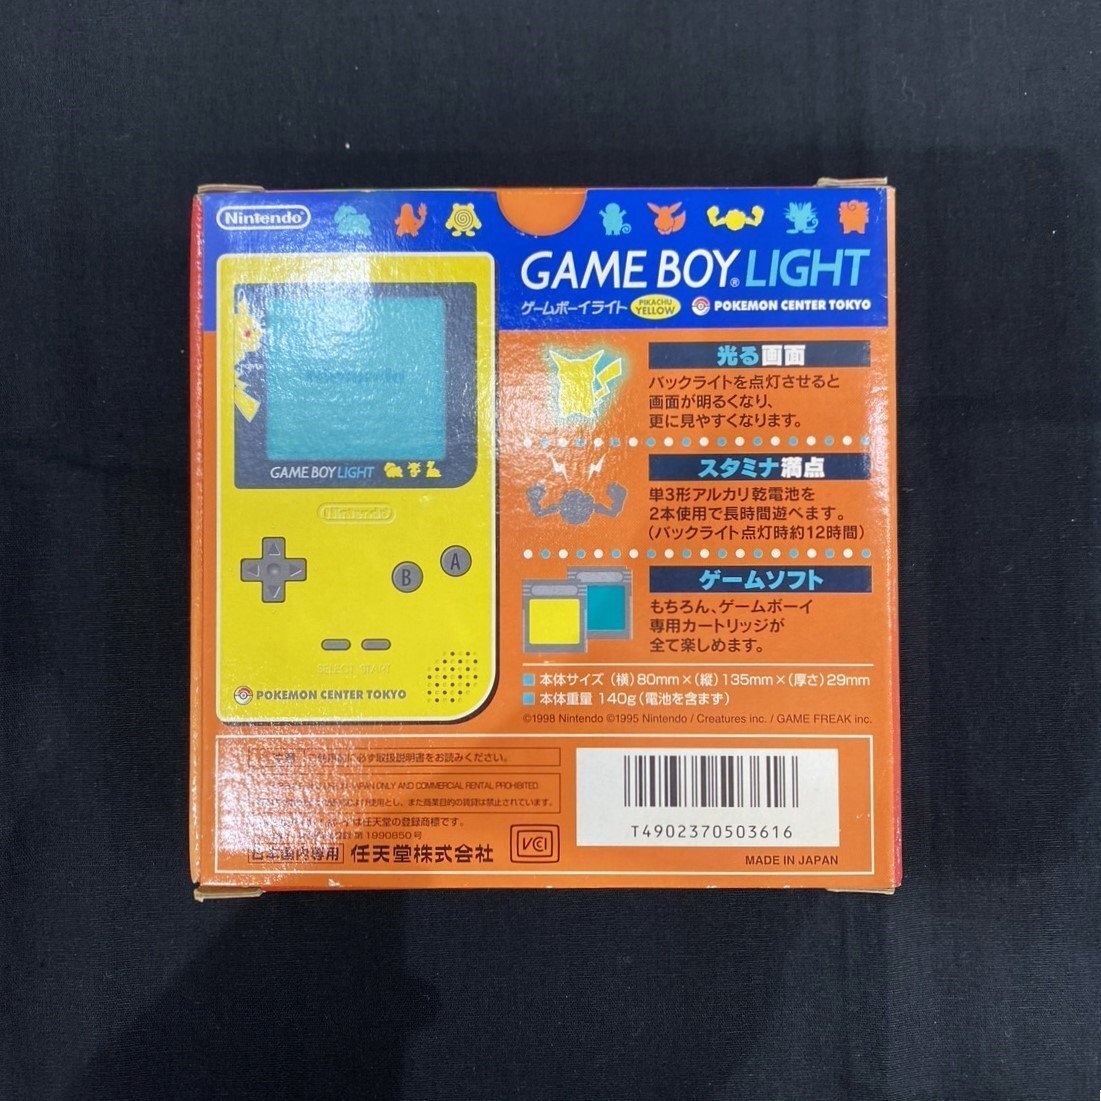 [6AO.03013C]*1 иен старт * Game Boy свет * Pokemon * Пикачу желтый *MGB-101* nintendo * закончившийся товар * фильм . память * электризация OK*